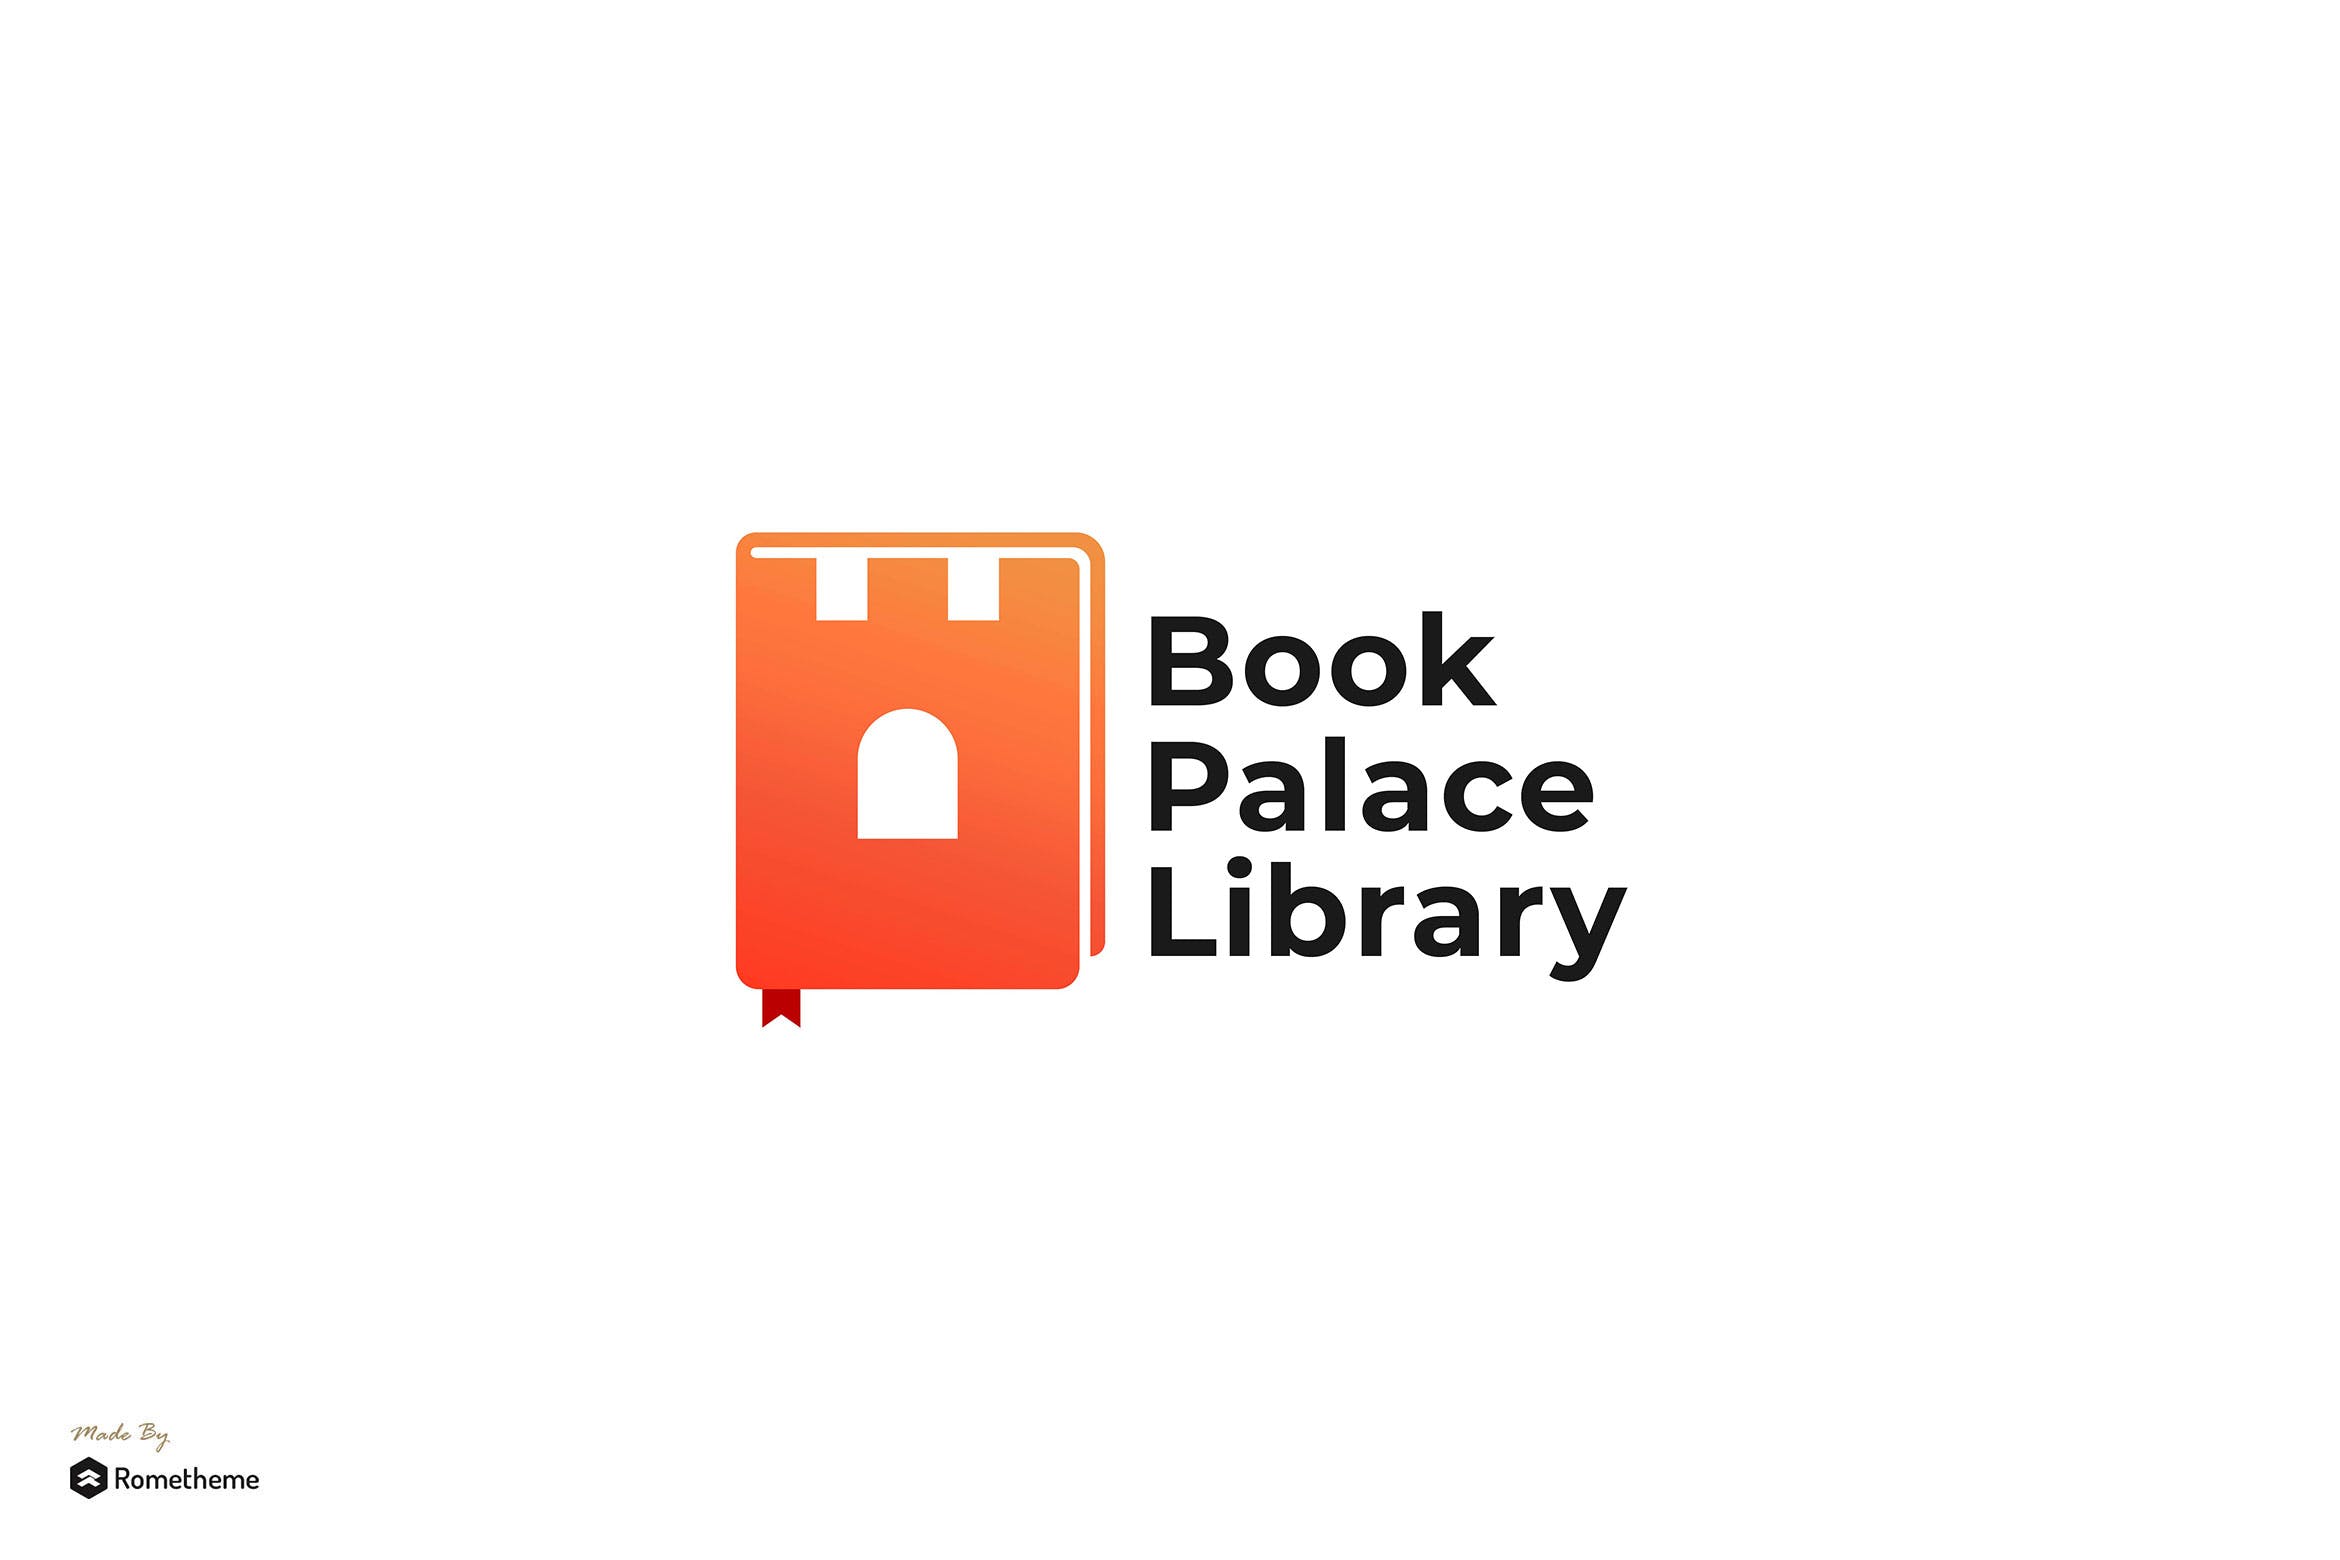 图书品牌&图书馆Logo设计素材库精选模板 Book Palace Library – Logo Template RB插图